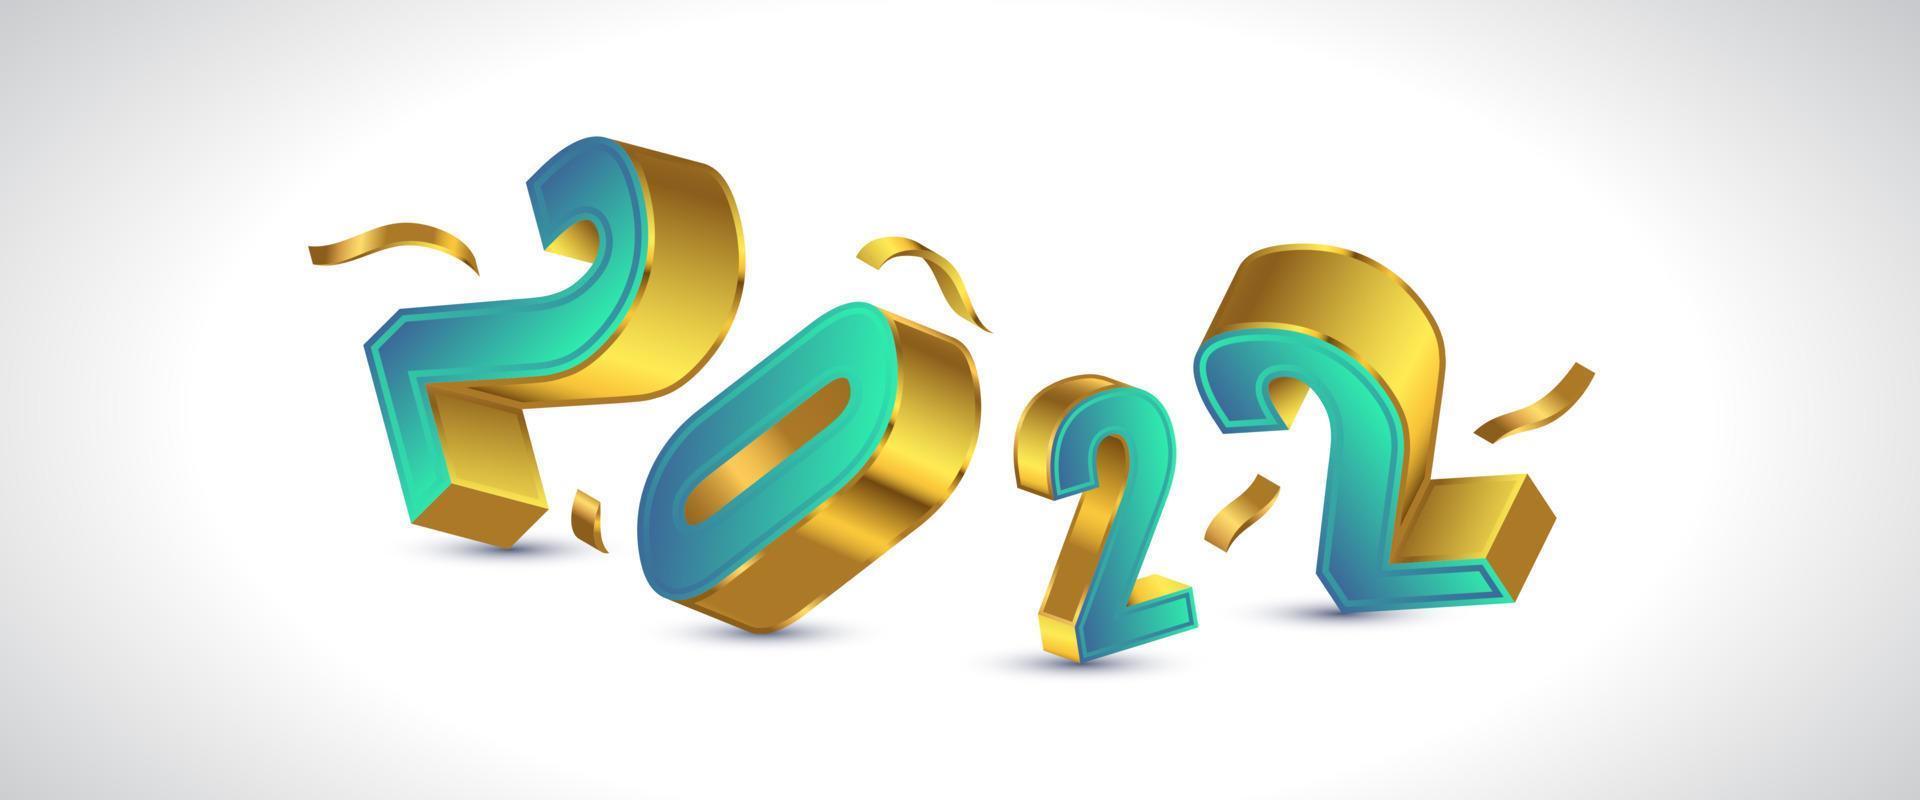 feliz ano novo 2022 banner design com números 3d em gradiente verde e dourado. modelo de design de celebração de ano novo para folheto, cartaz, folheto, cartão, banner ou cartão postal vetor